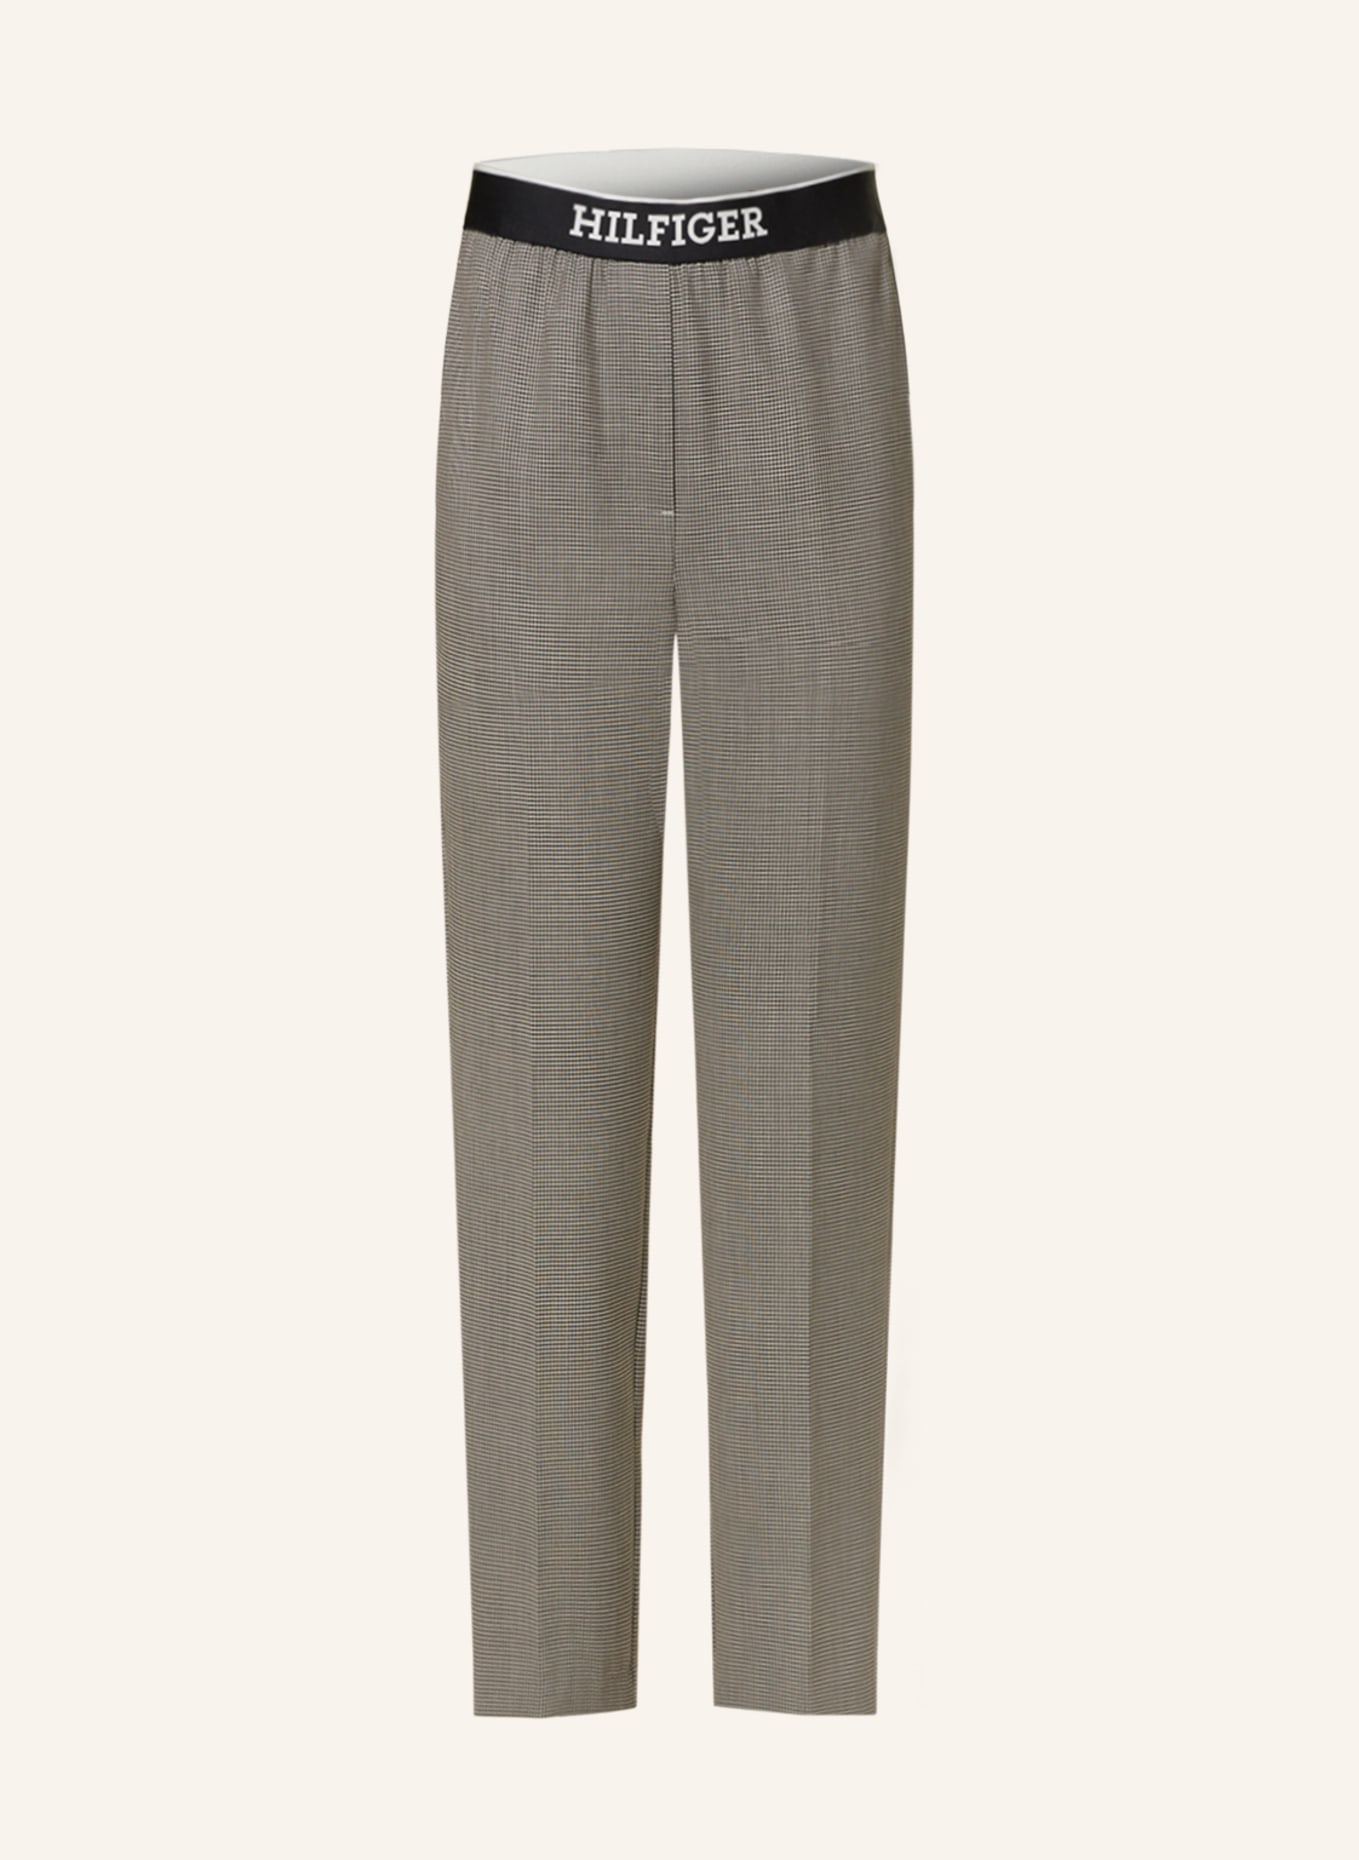 TOMMY HILFIGER 7/8 pants, Color: DARK BROWN/ CAMEL/ BLACK (Image 1)